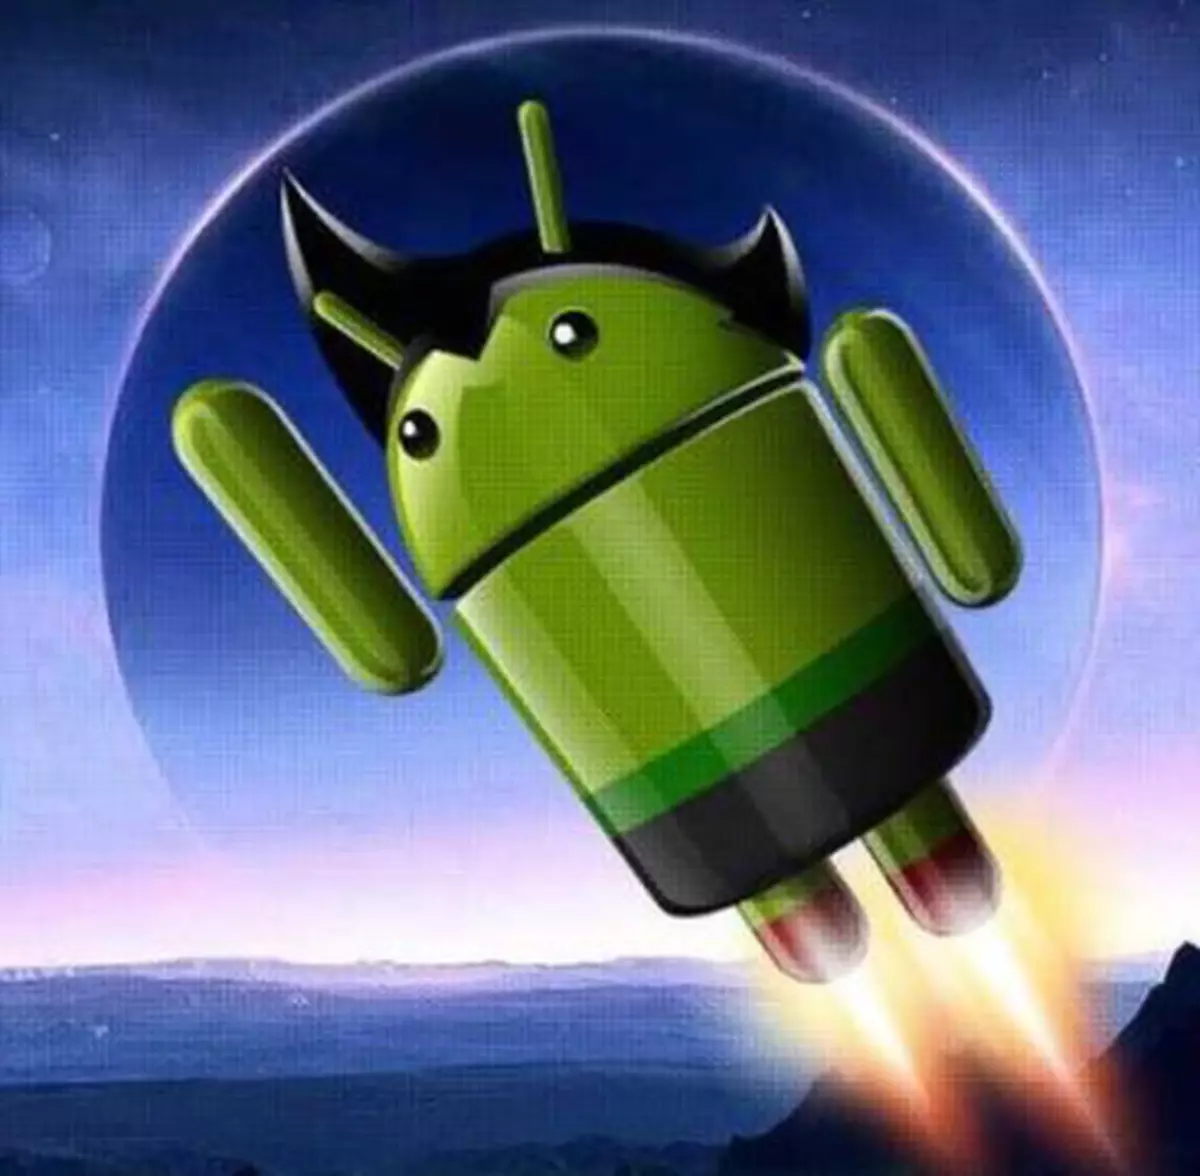 Ahoana ny fomba hanafainganana ny Android